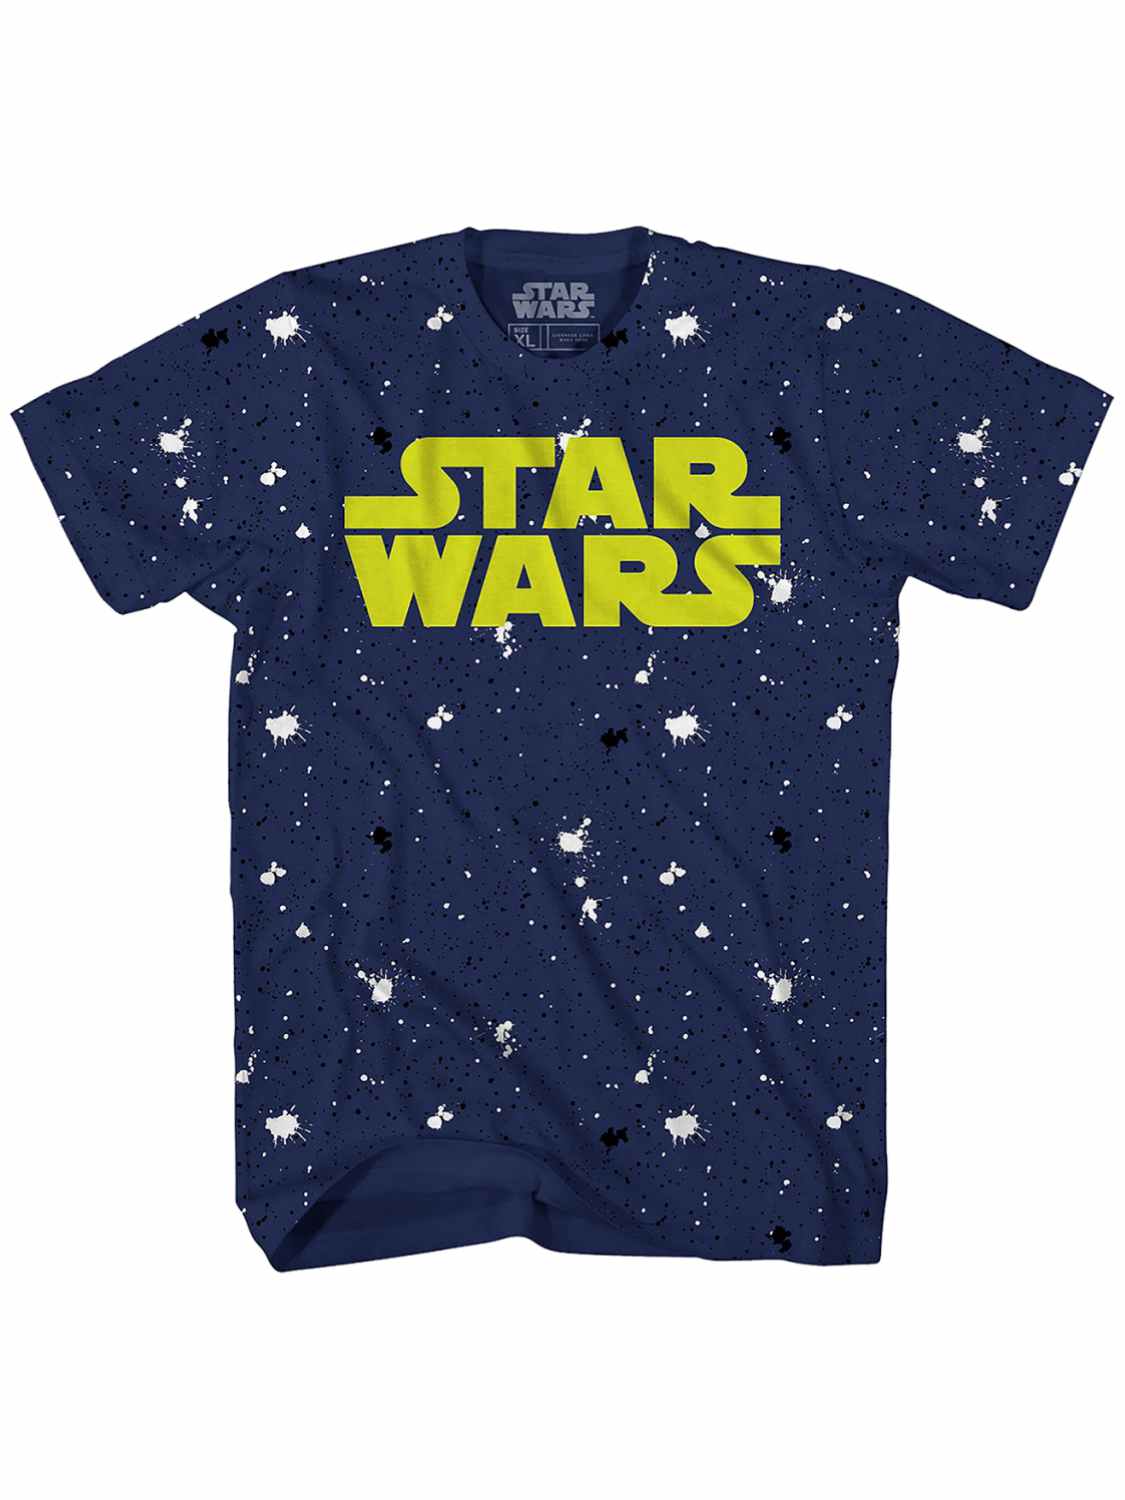 Star Wars Boys Blue & Yellow Splatter Paint Star Wars T-Shirt Tee Shirt